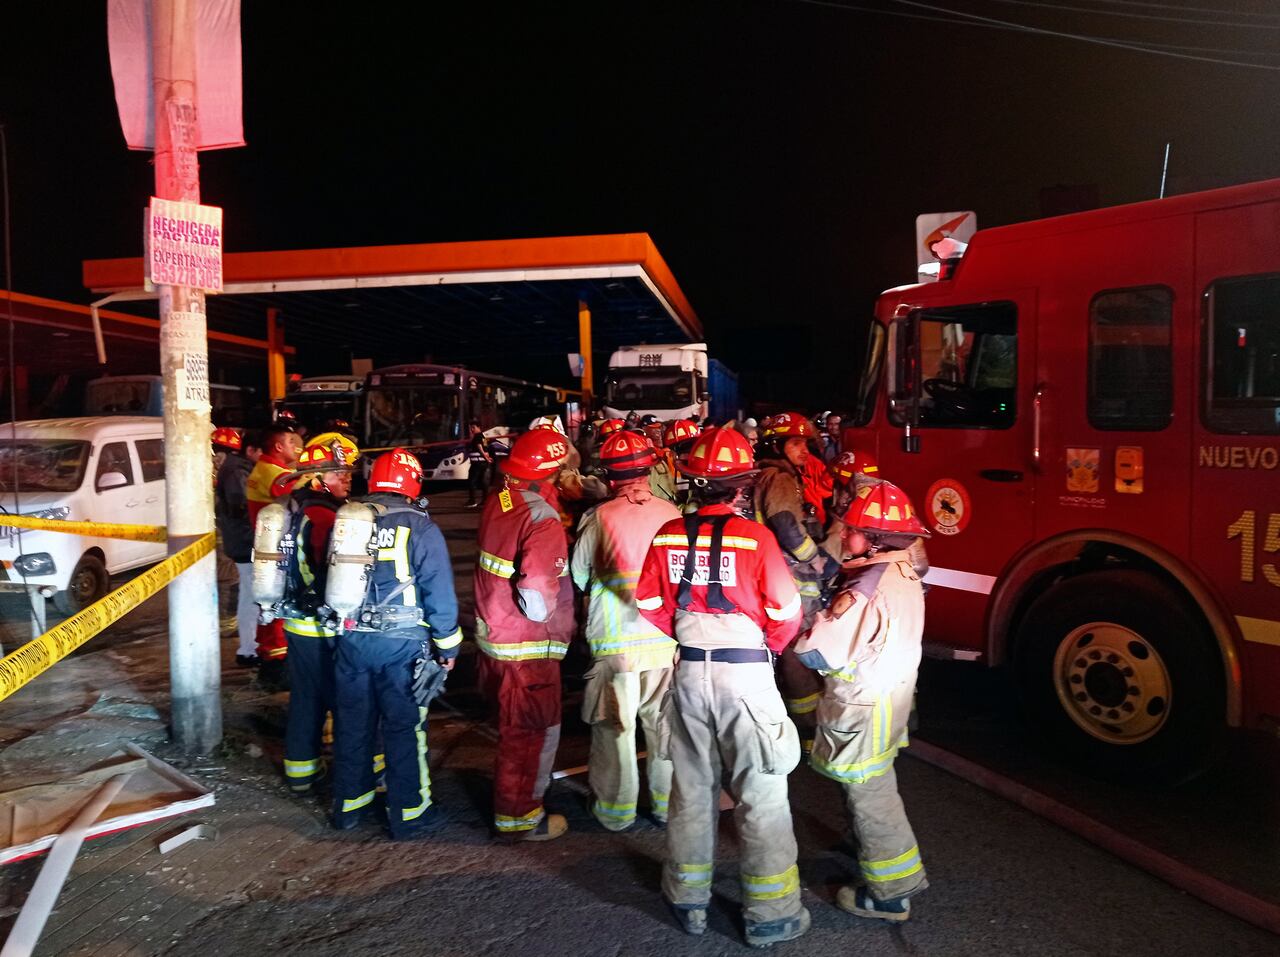 Al menos una persona murió y 22 resultaron heridas el lunes tras una deflagración en una gasolinera de Lima, informó el Ministerio de Salud de Perú.